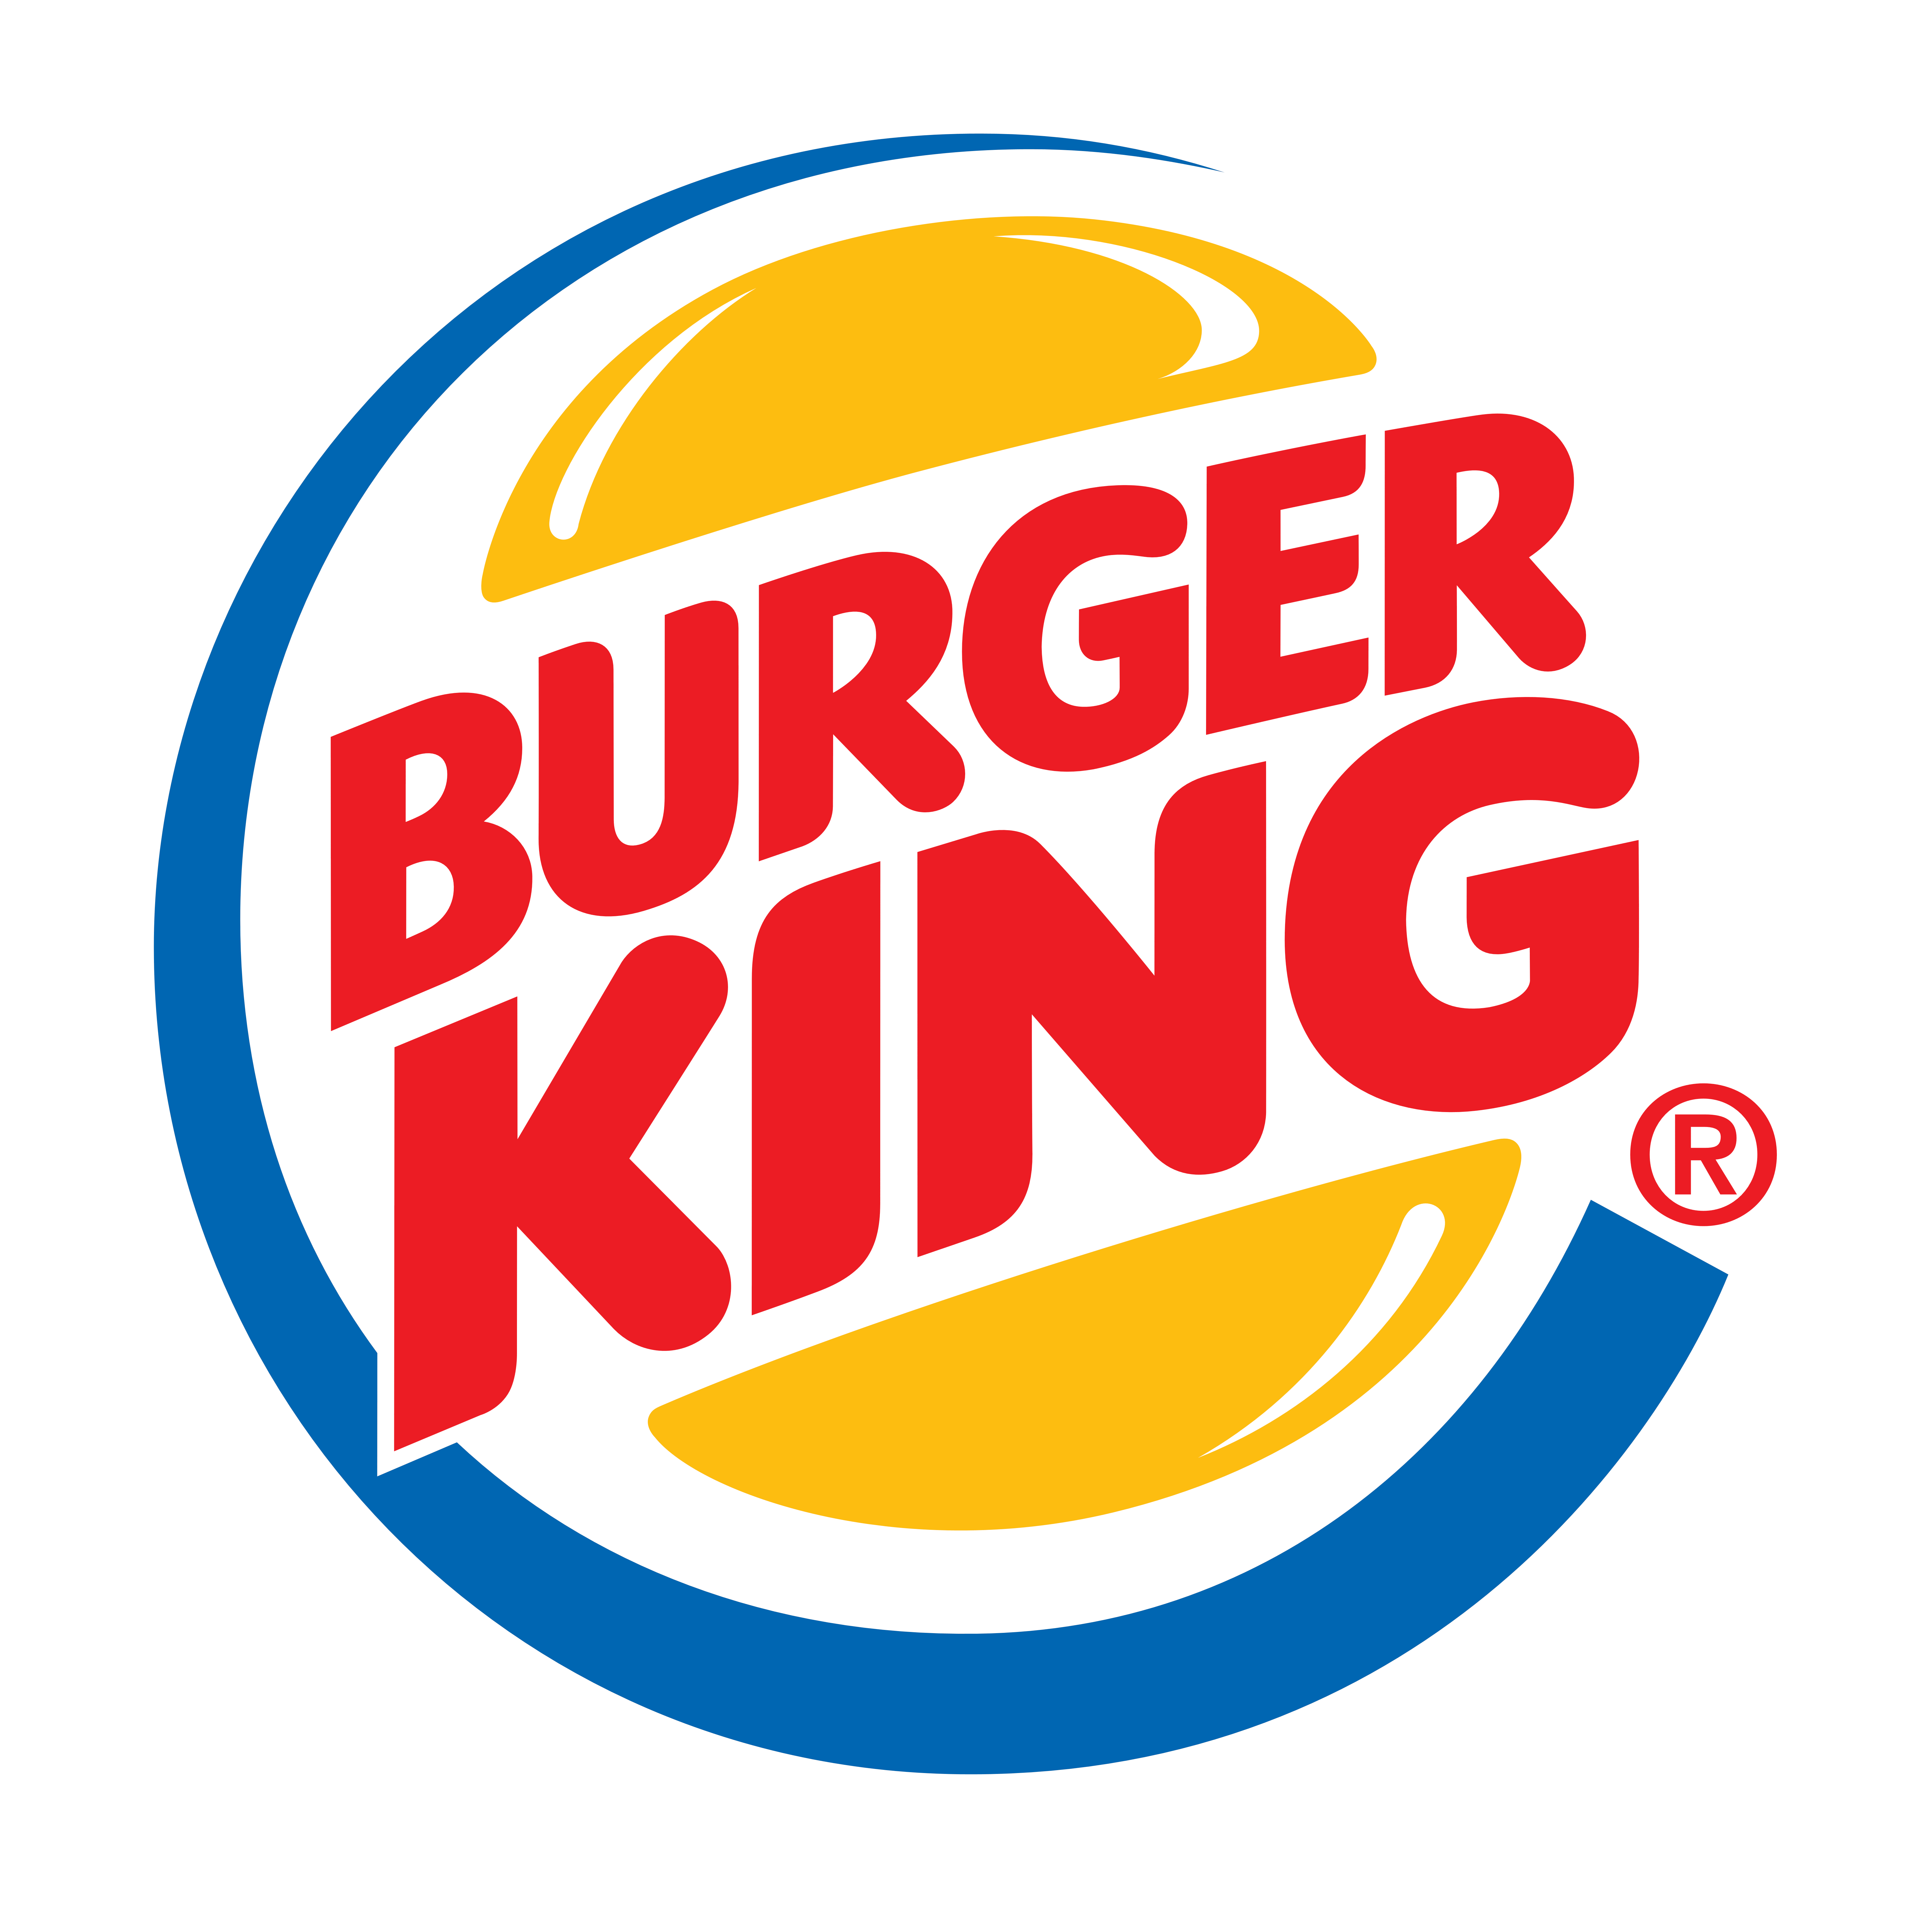 Burger King logo, logotype